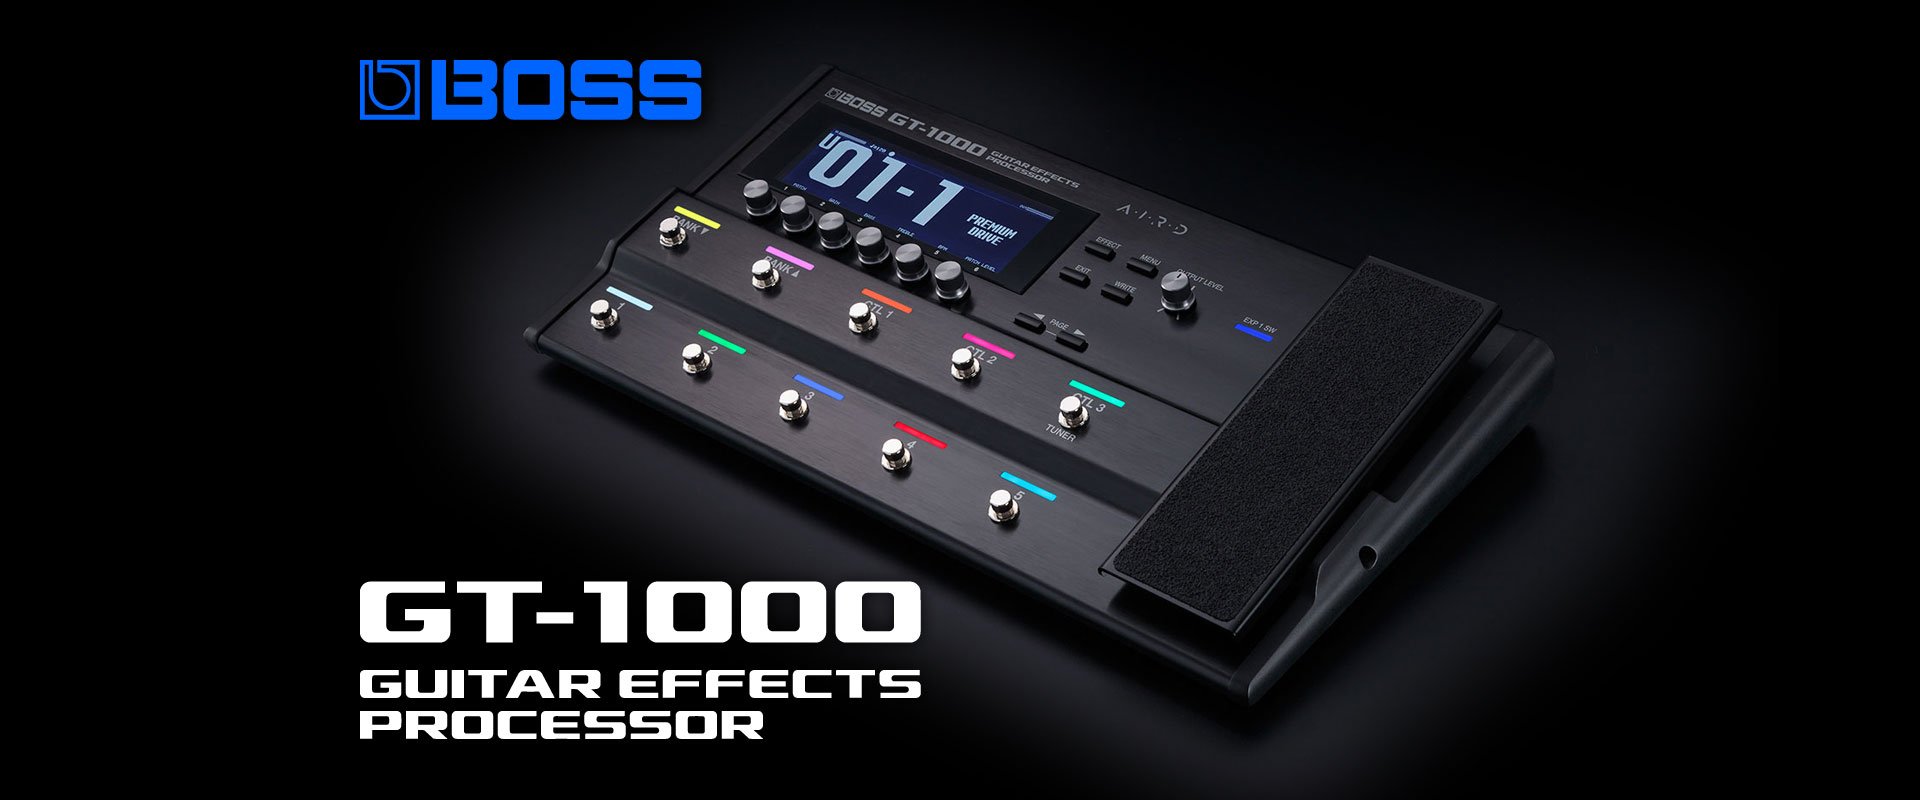 BOSS GT-1000 Effects Processor